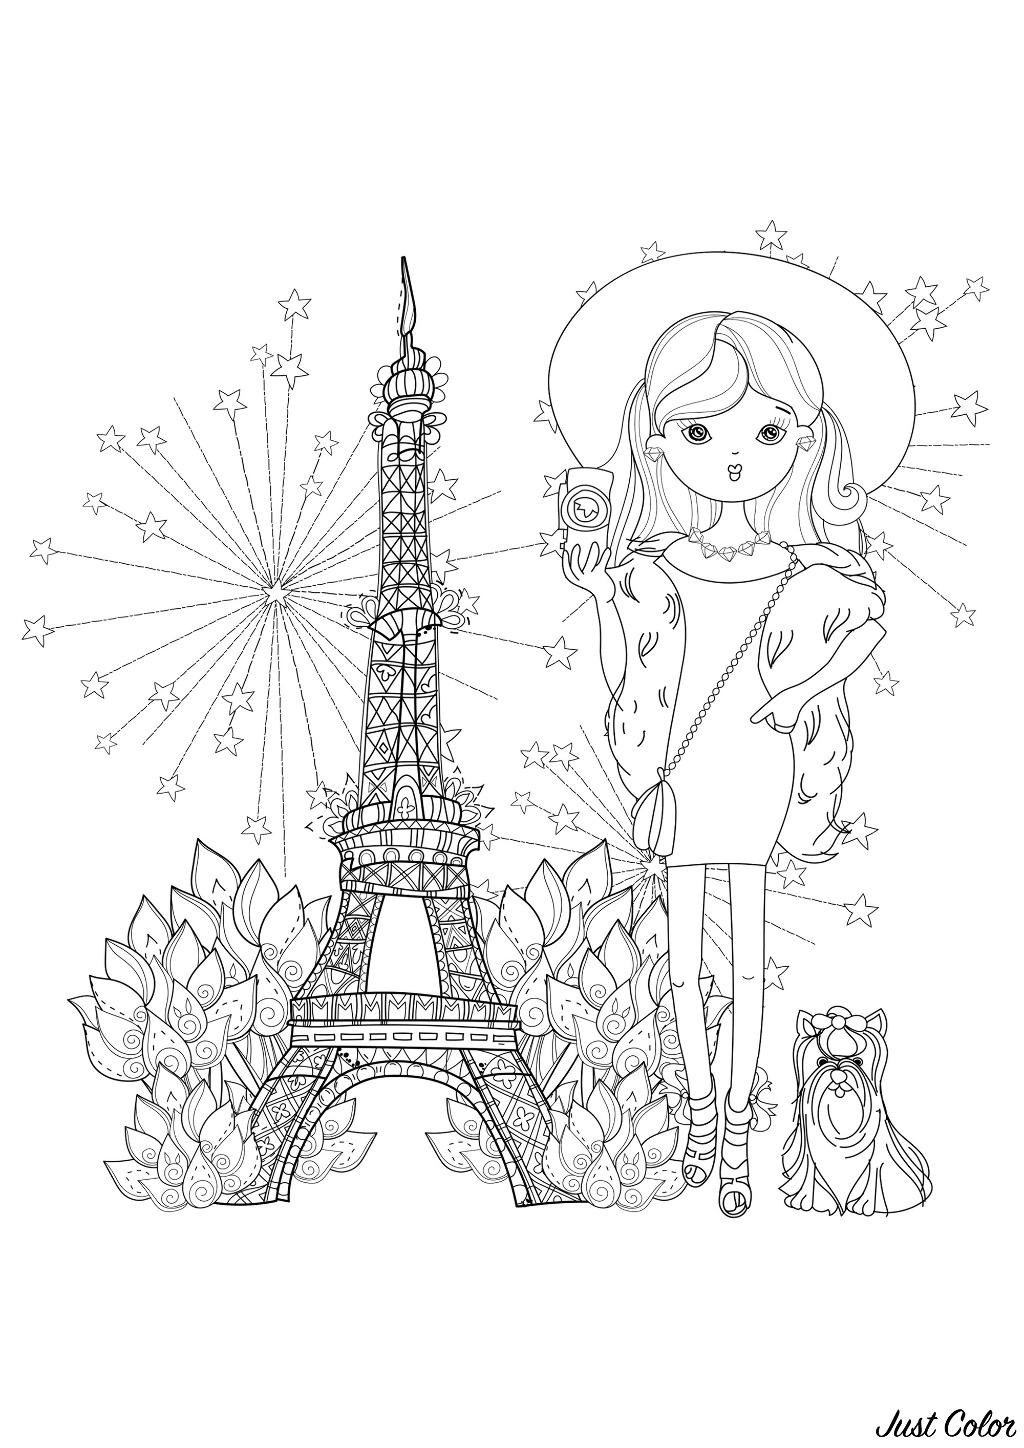 Jeune et jolie voyageuse accompagnée de son petit chien, avec la Tour Eiffel en arrière-plan. Construite en 1889 pour l'Exposition Universelle, la Tour Eiffel est devenue le principal symbole de Paris, et même de la France.